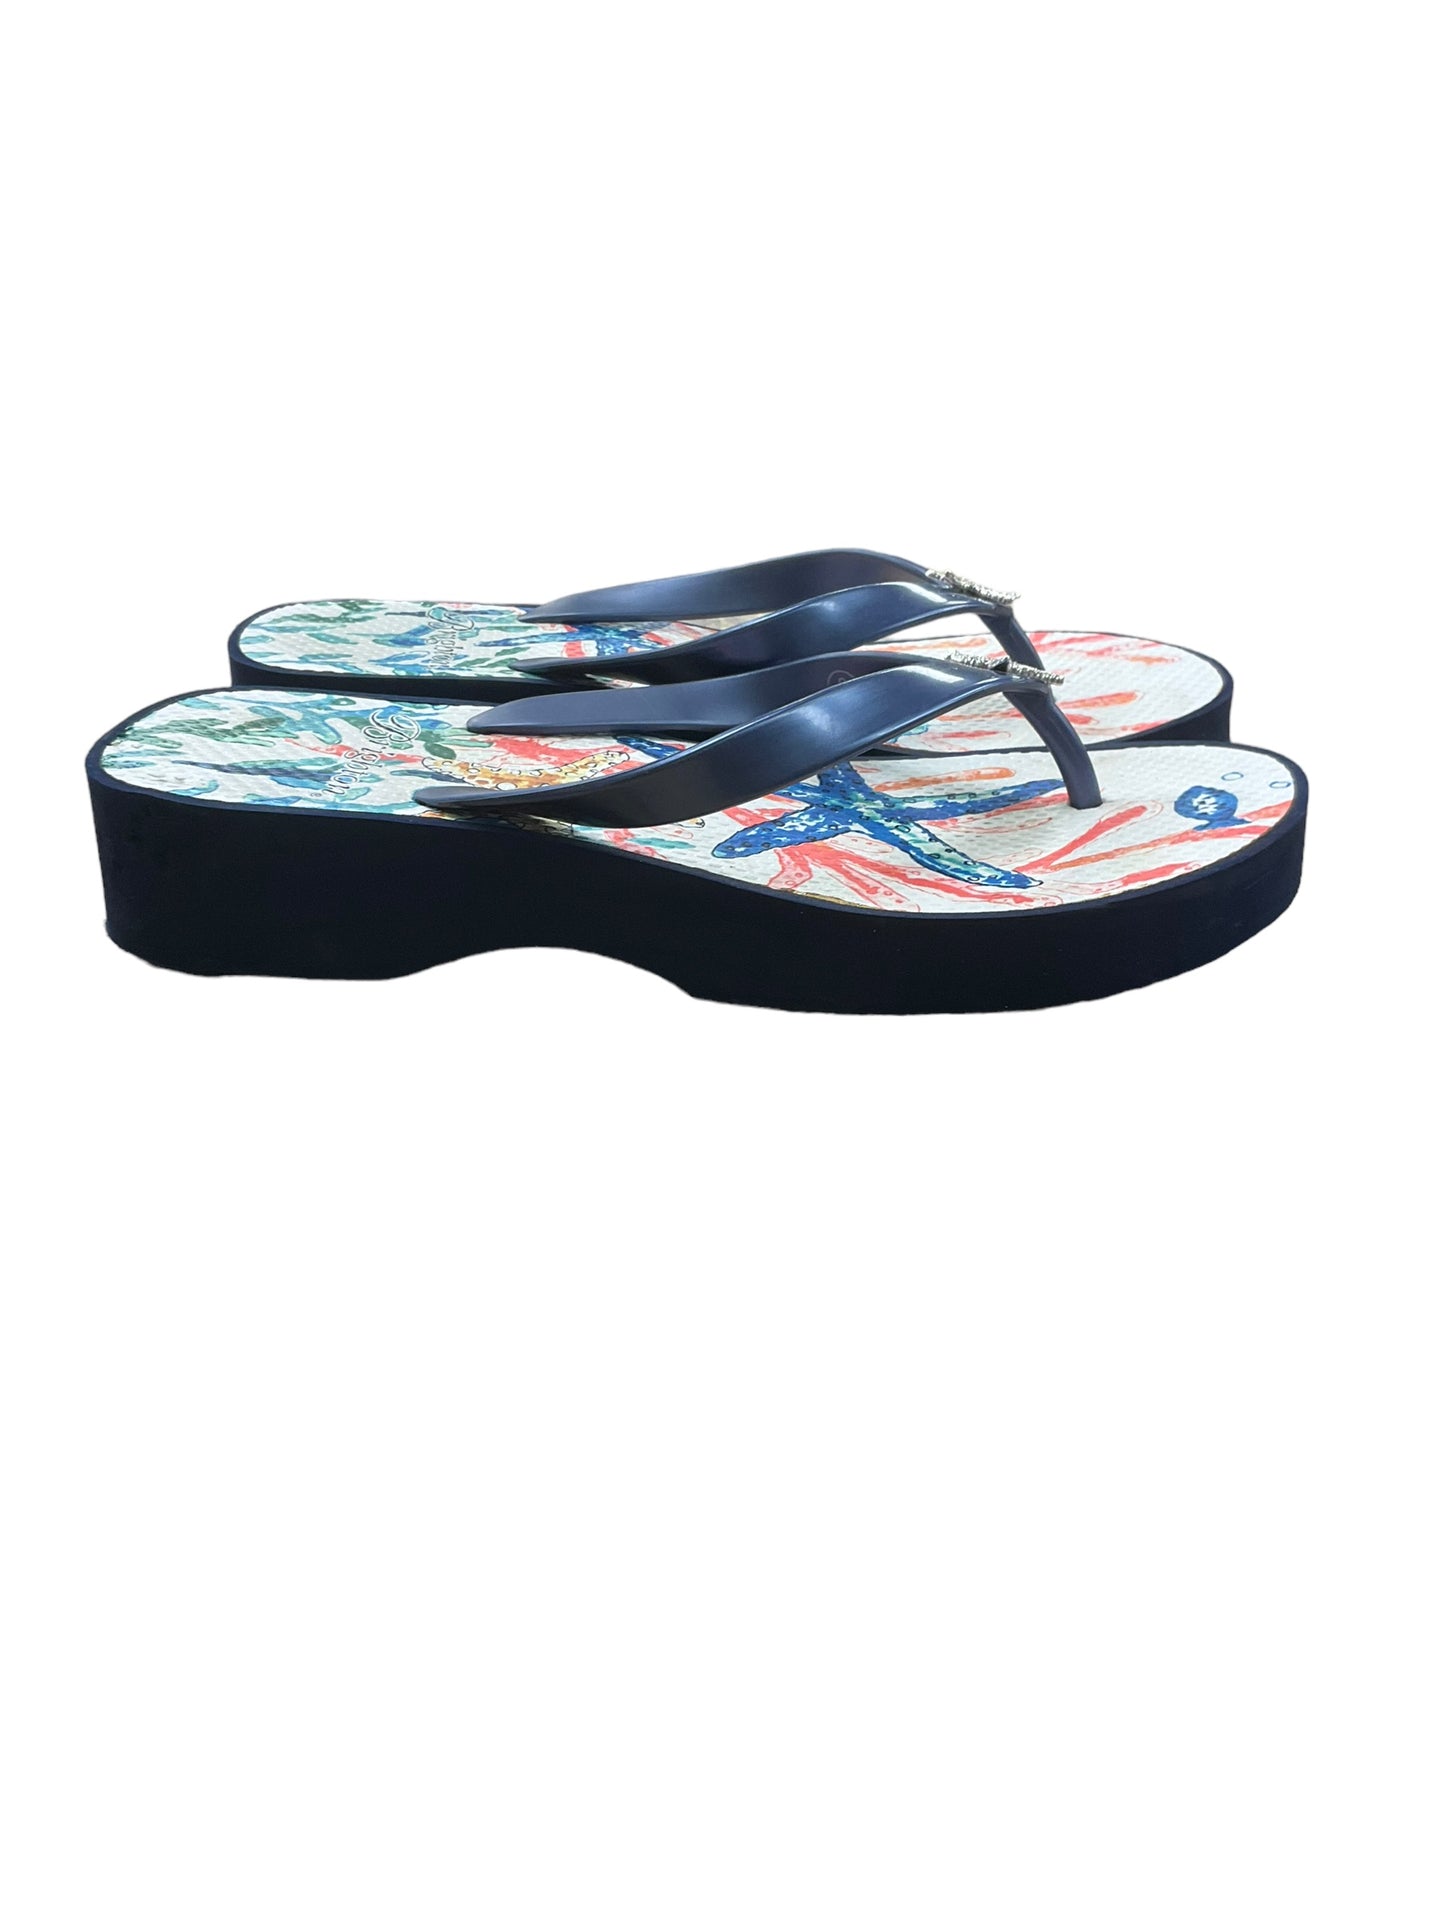 Sandals Flip Flops By Brighton  Size: 8